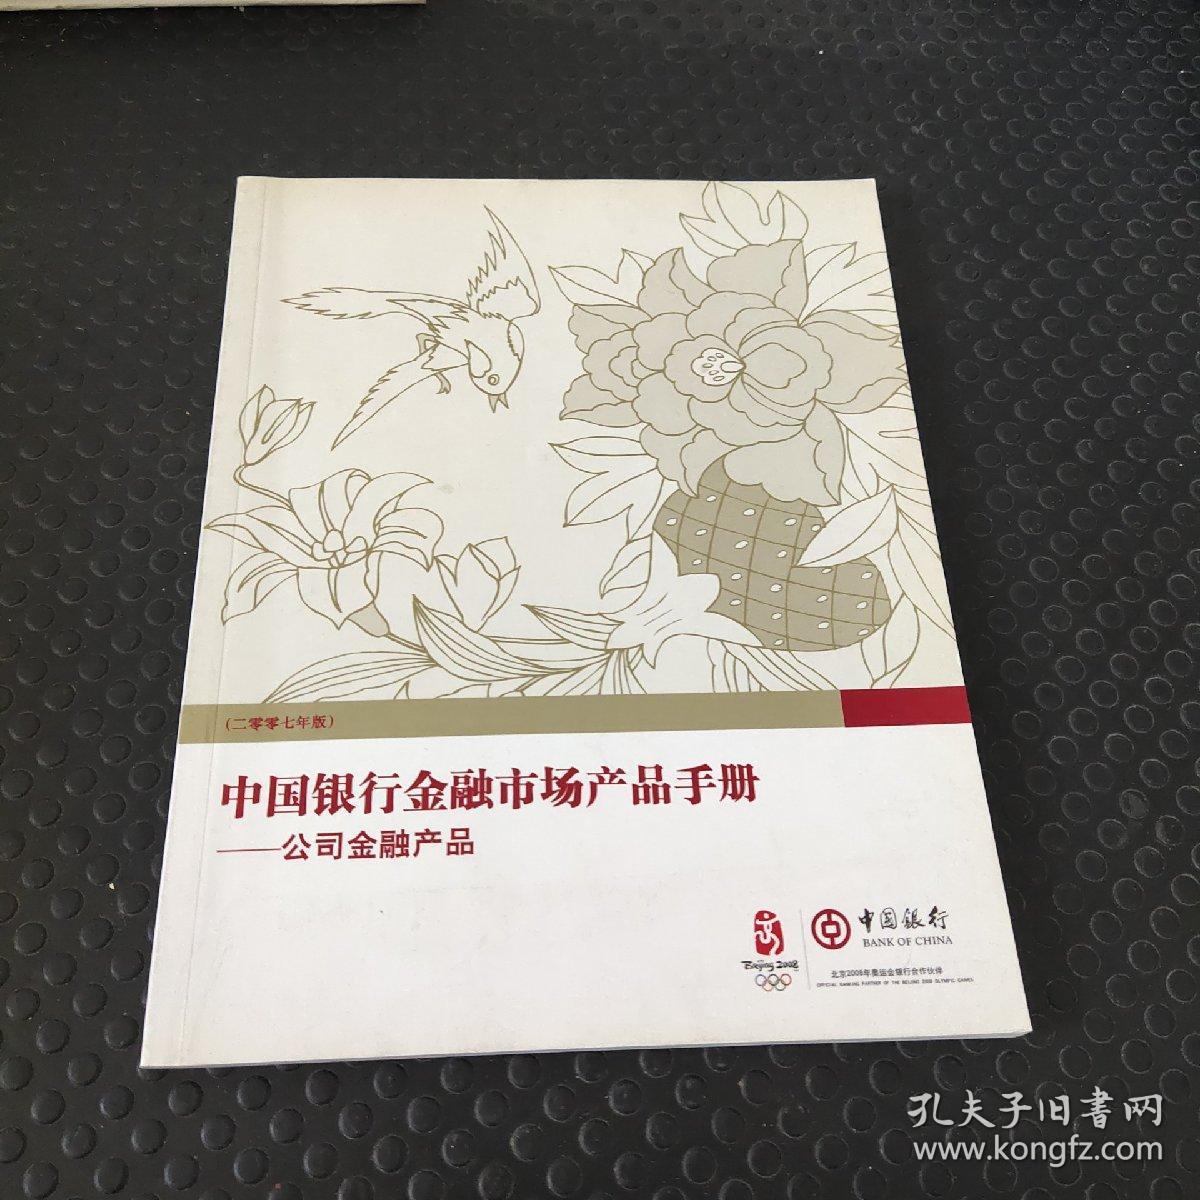 中国人民银行金融市场产品手册